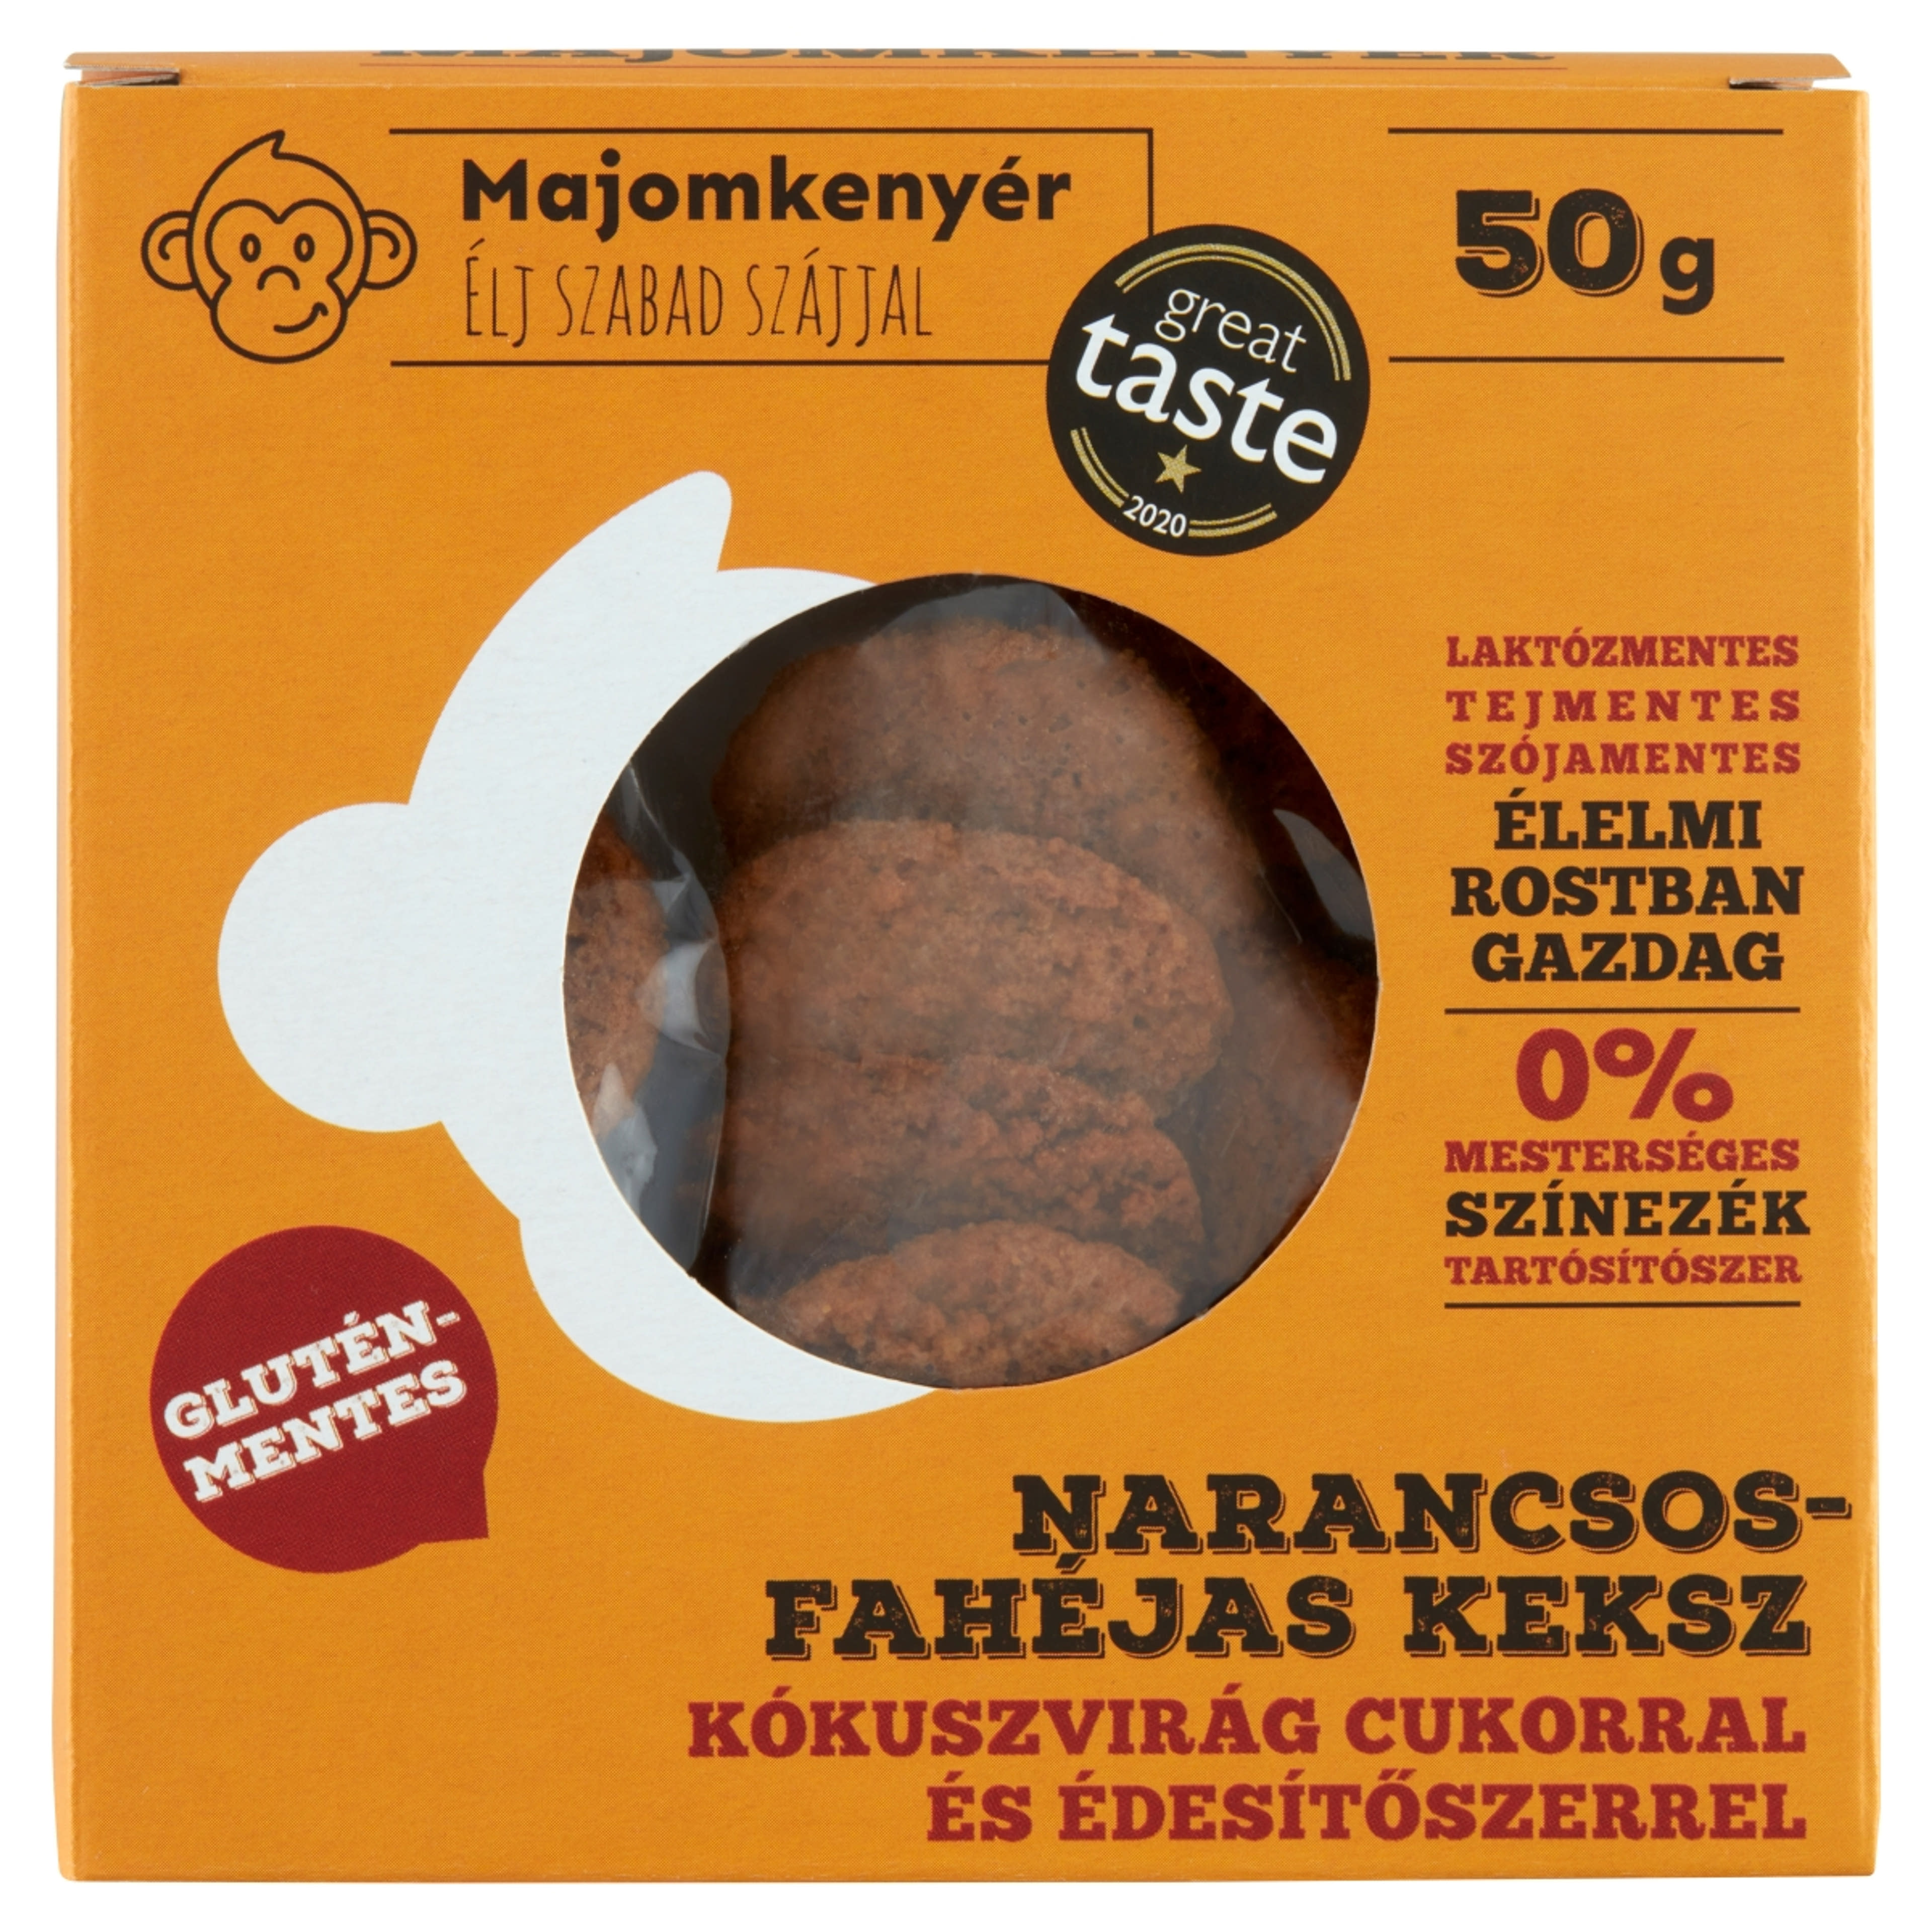 Majomkenyér Gluténmentes Narancsos-Fahéjas keksz - 50 g